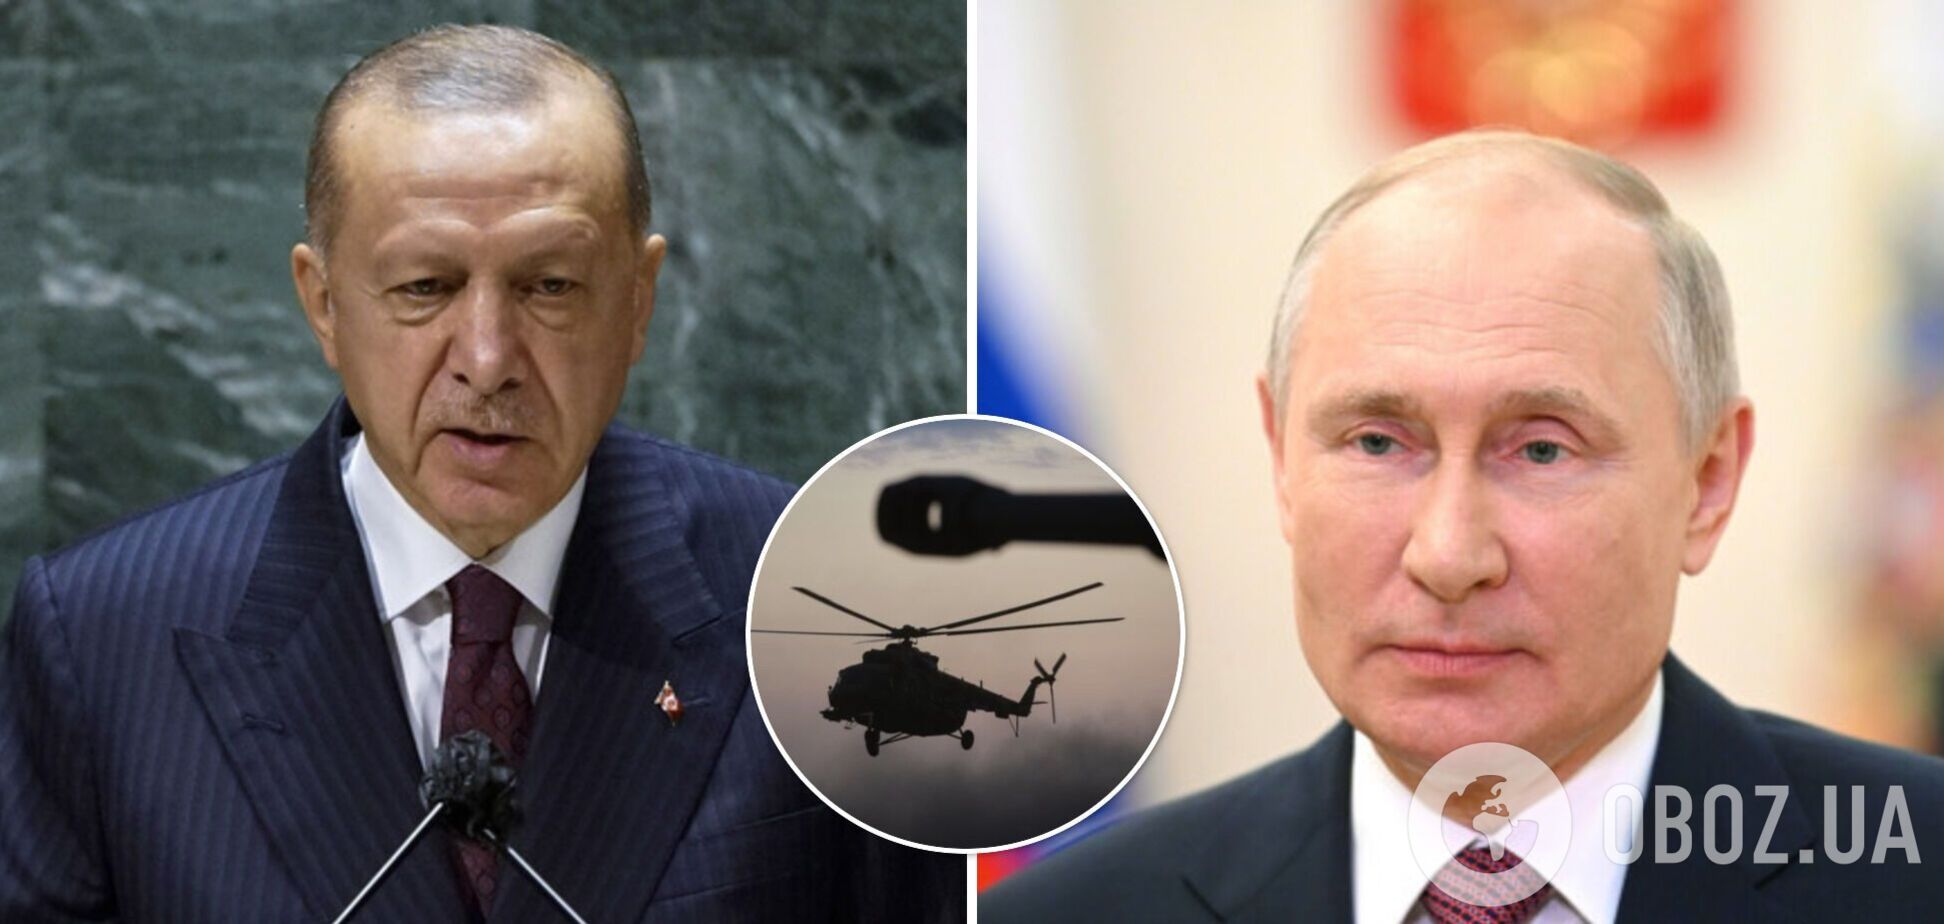 Турецкие военные перед визитом Эрдогана к Путину обстреляли российский вертолет в Сирии